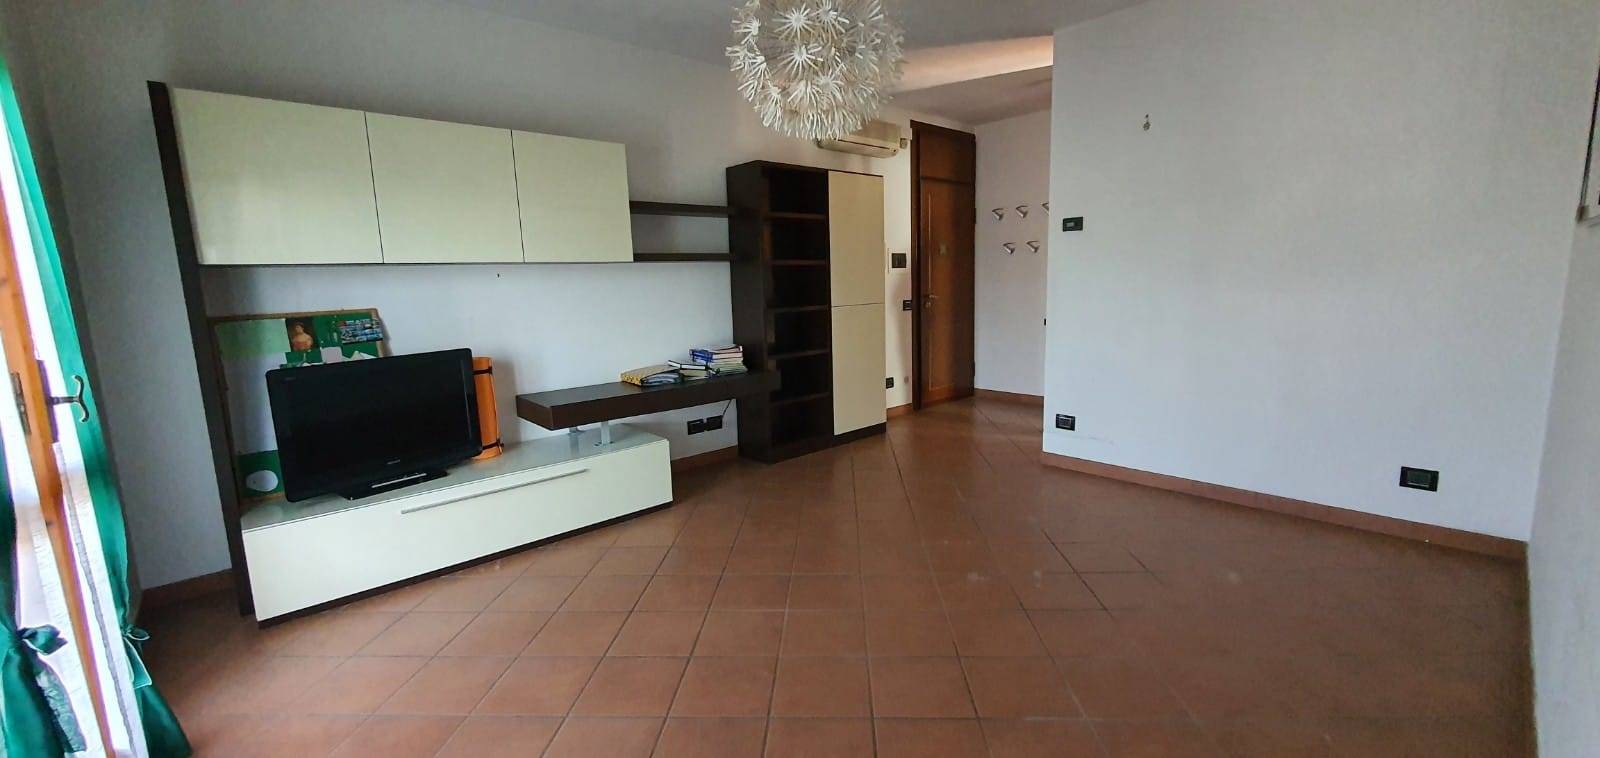 Appartamento in vendita a Viadana, 3 locali, zona gnara, prezzo € 88.000 | PortaleAgenzieImmobiliari.it